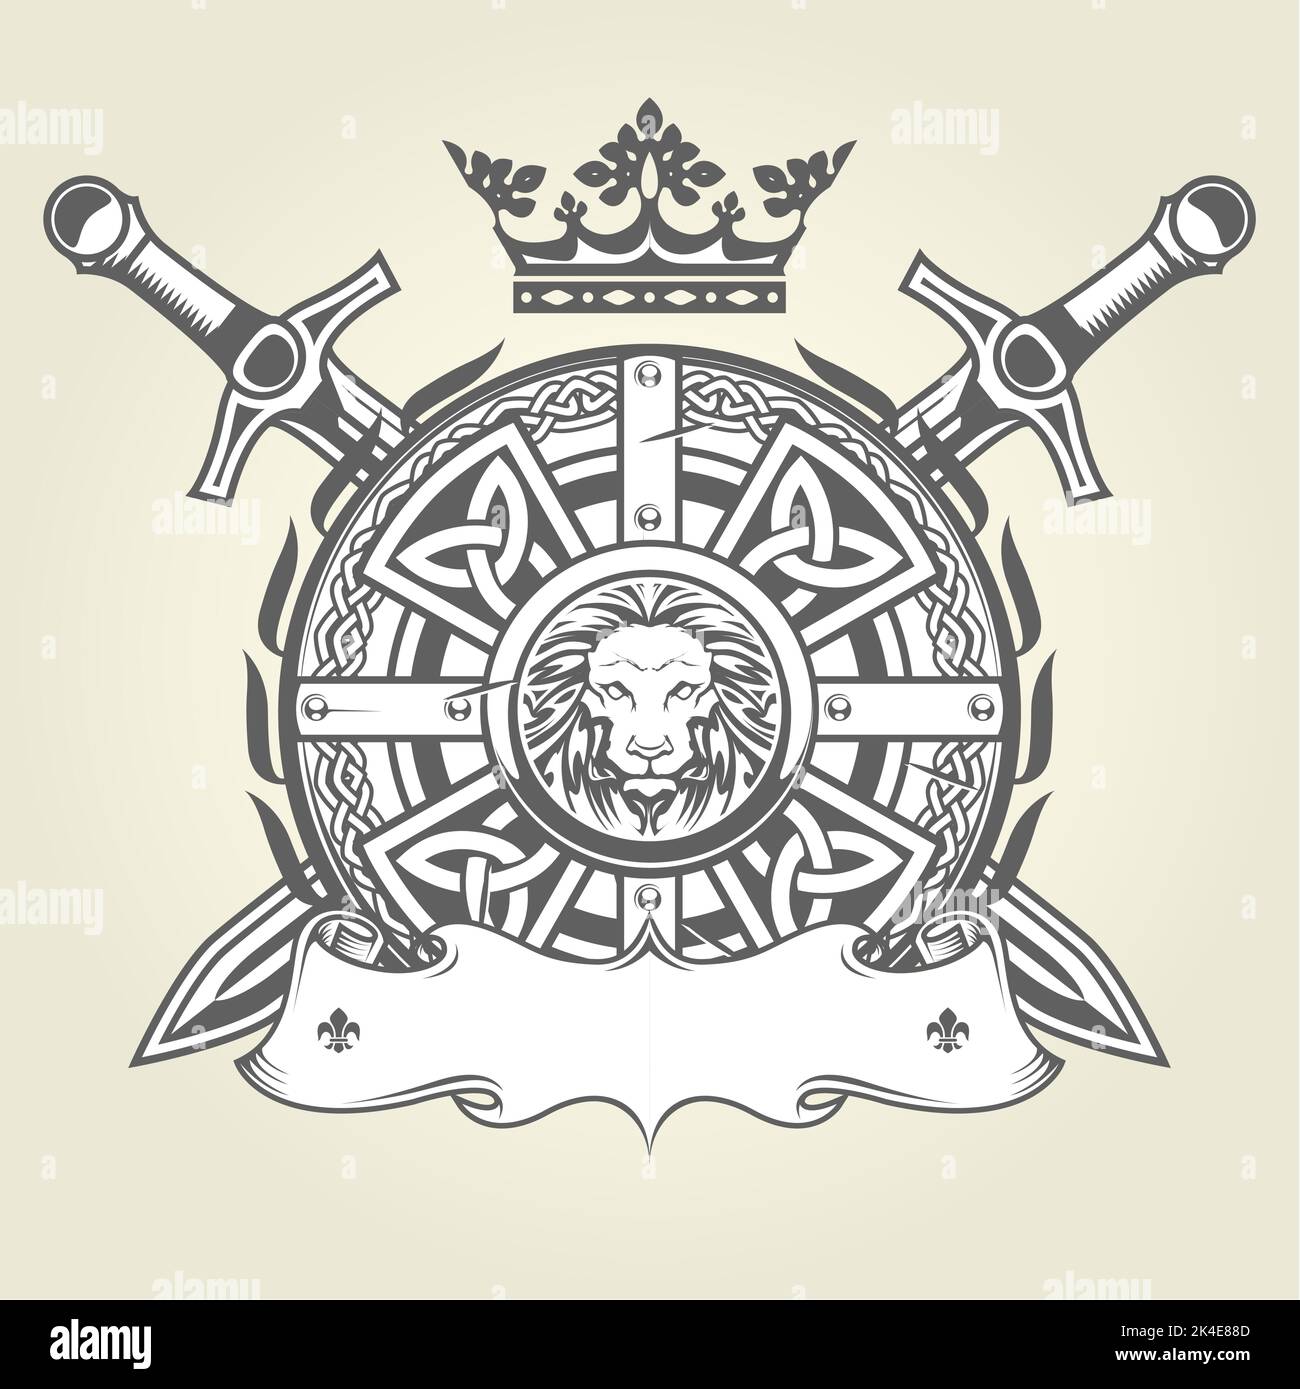 Écusson royal médiéval avec armure chevalier, bouclier richement orné, couronne et blason héraldique croisé avec bannière, vecteur Illustration de Vecteur